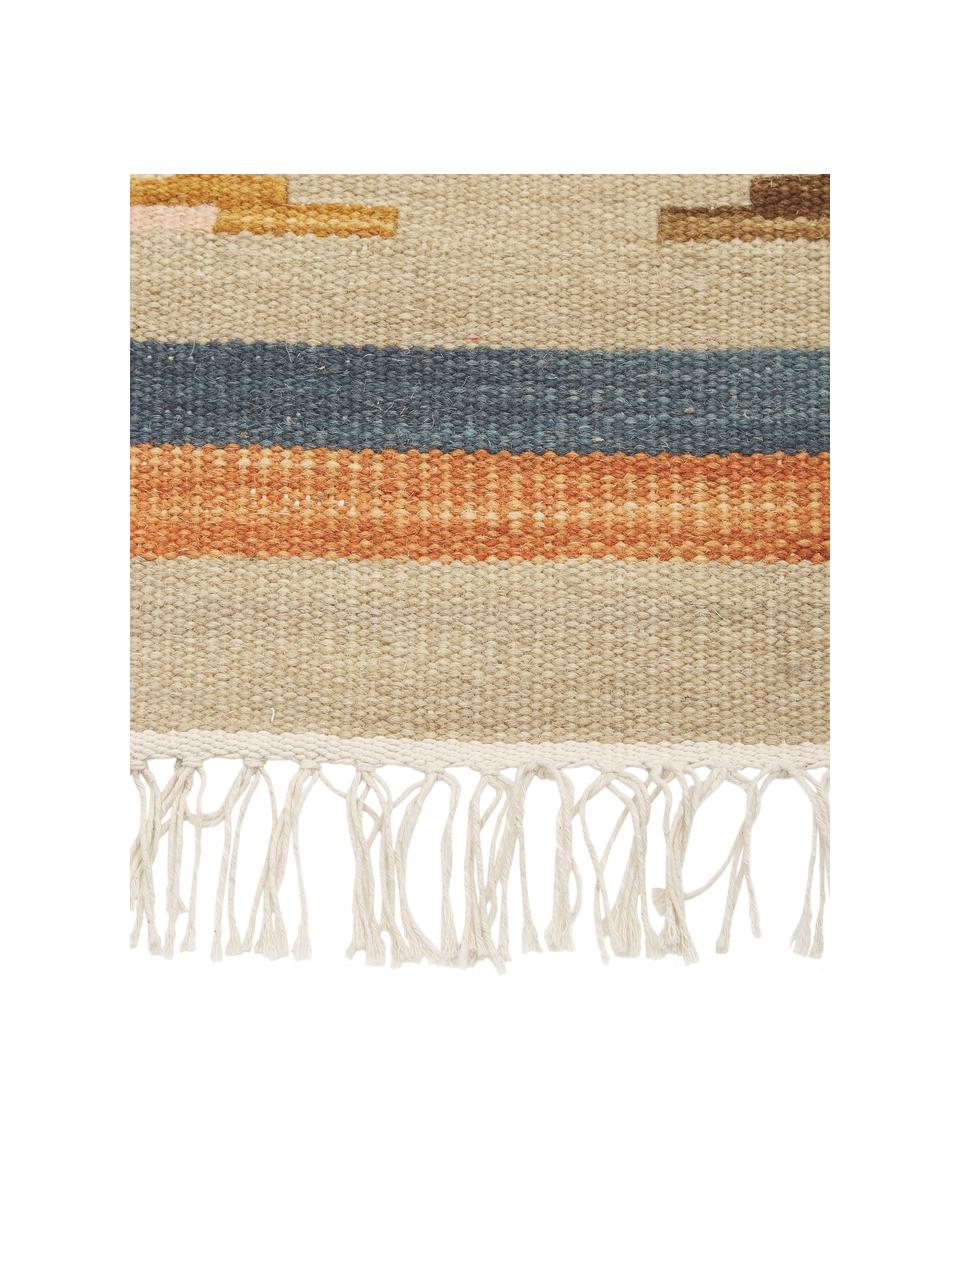 Handgewebter Kelimteppich Olon aus Wolle mit Fransen, 100% Wolle, Mehrfarbig, B 125 x L 185 cm (Größe S)